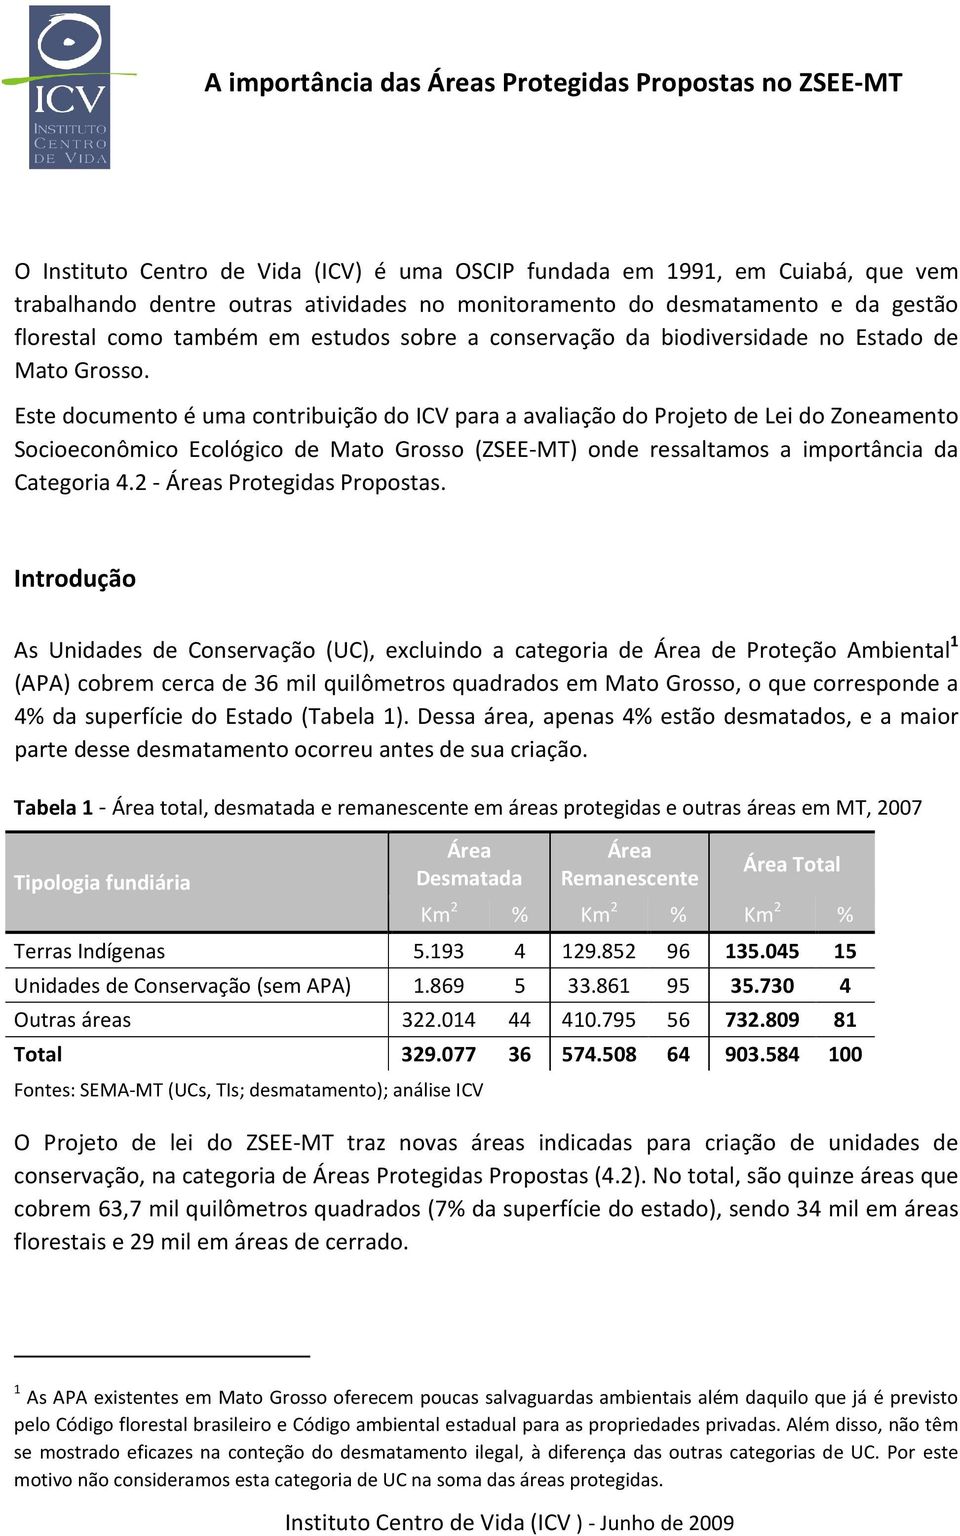 Este documento é uma contribuição do ICV para a avaliação do Projeto de Lei do Zoneamento Socioeconômico Ecológico de Mato Grosso (ZSEE-MT) onde ressaltamos a importância da Categoria 4.